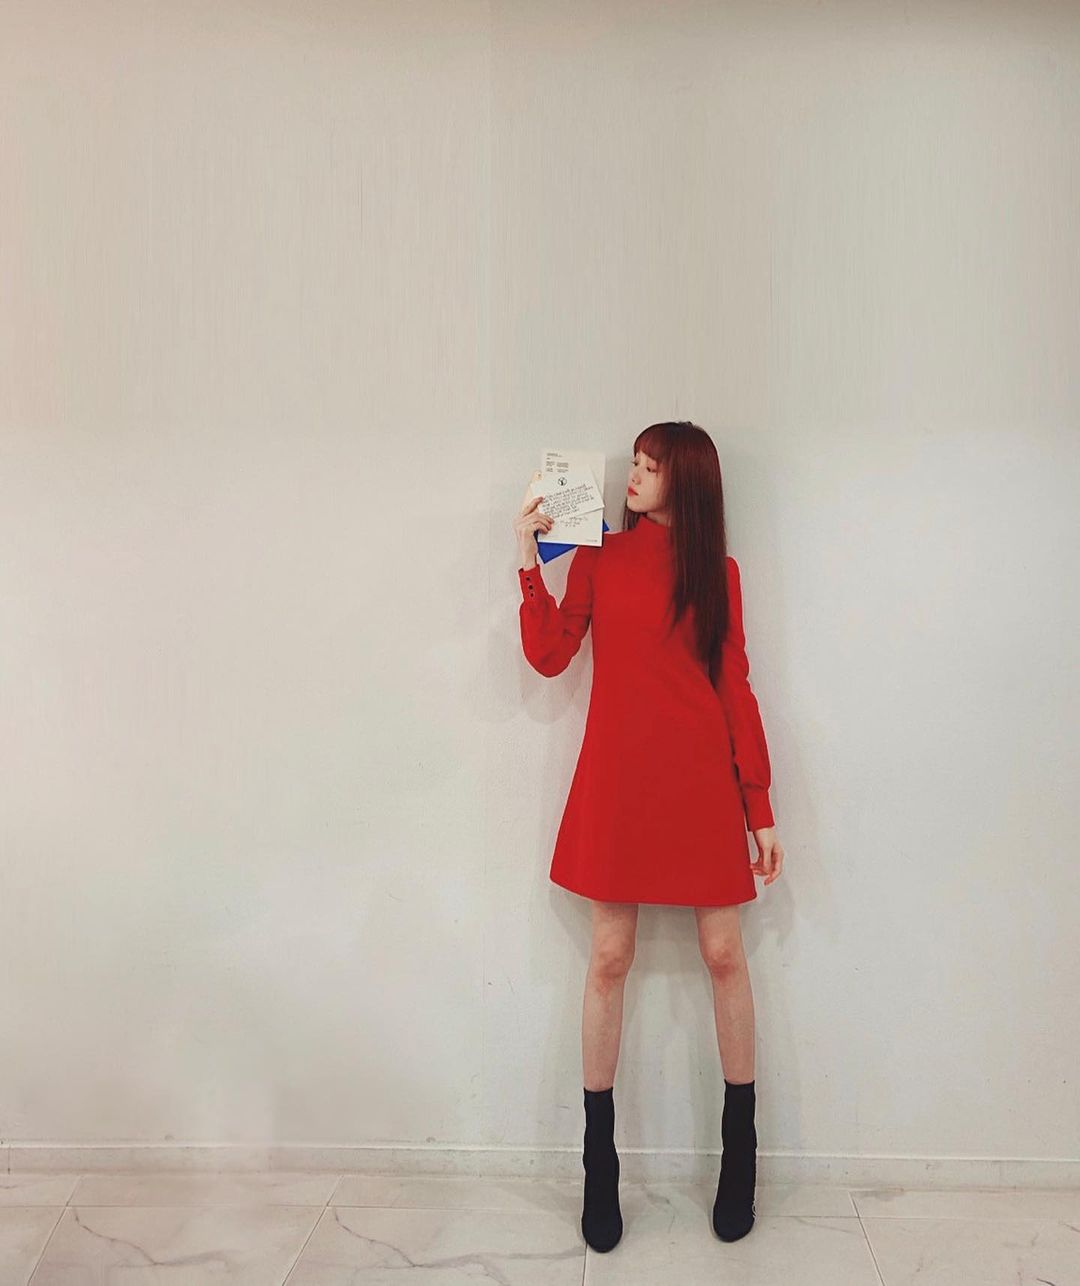 Lee sung kyung mặc đầm đỏ đơn giản